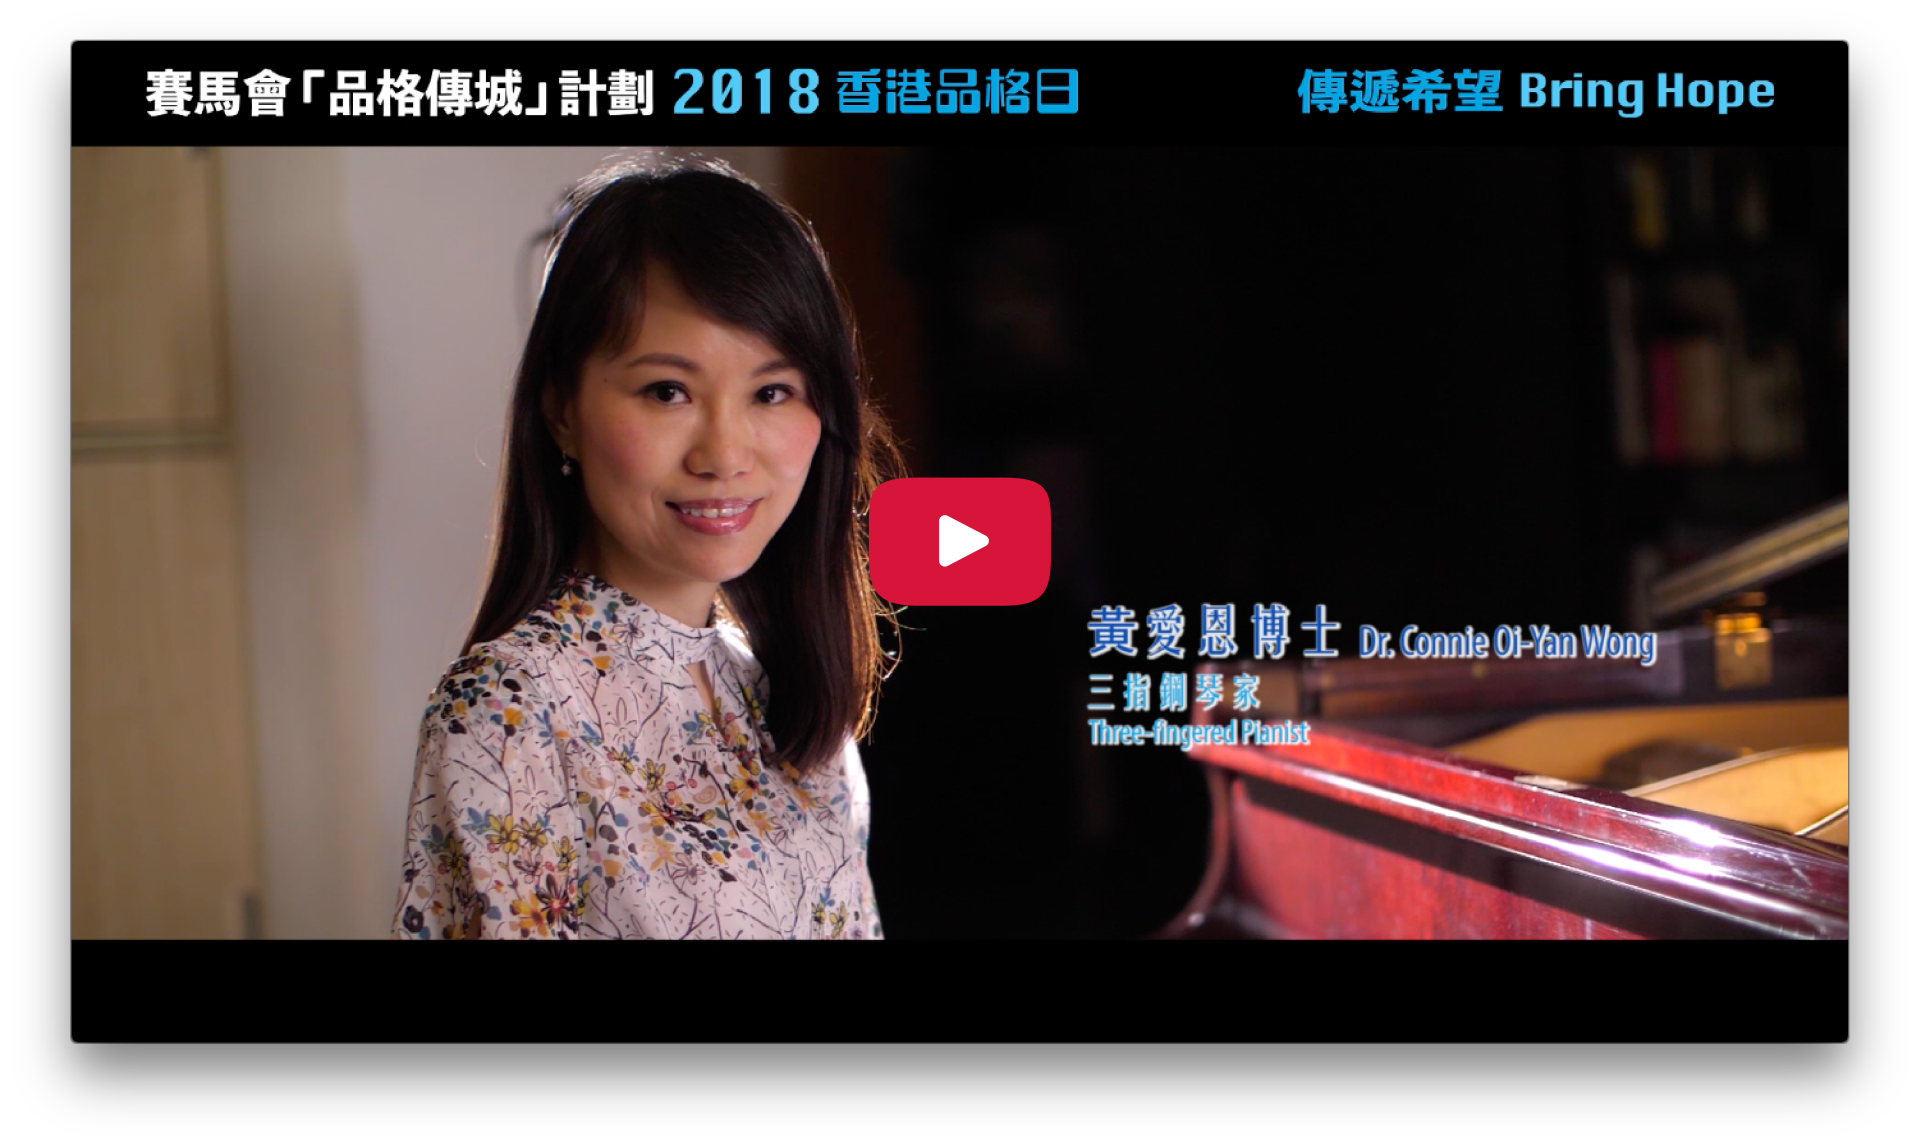 2018 Character Day Hong Kong Ambassadors - Connie Wong